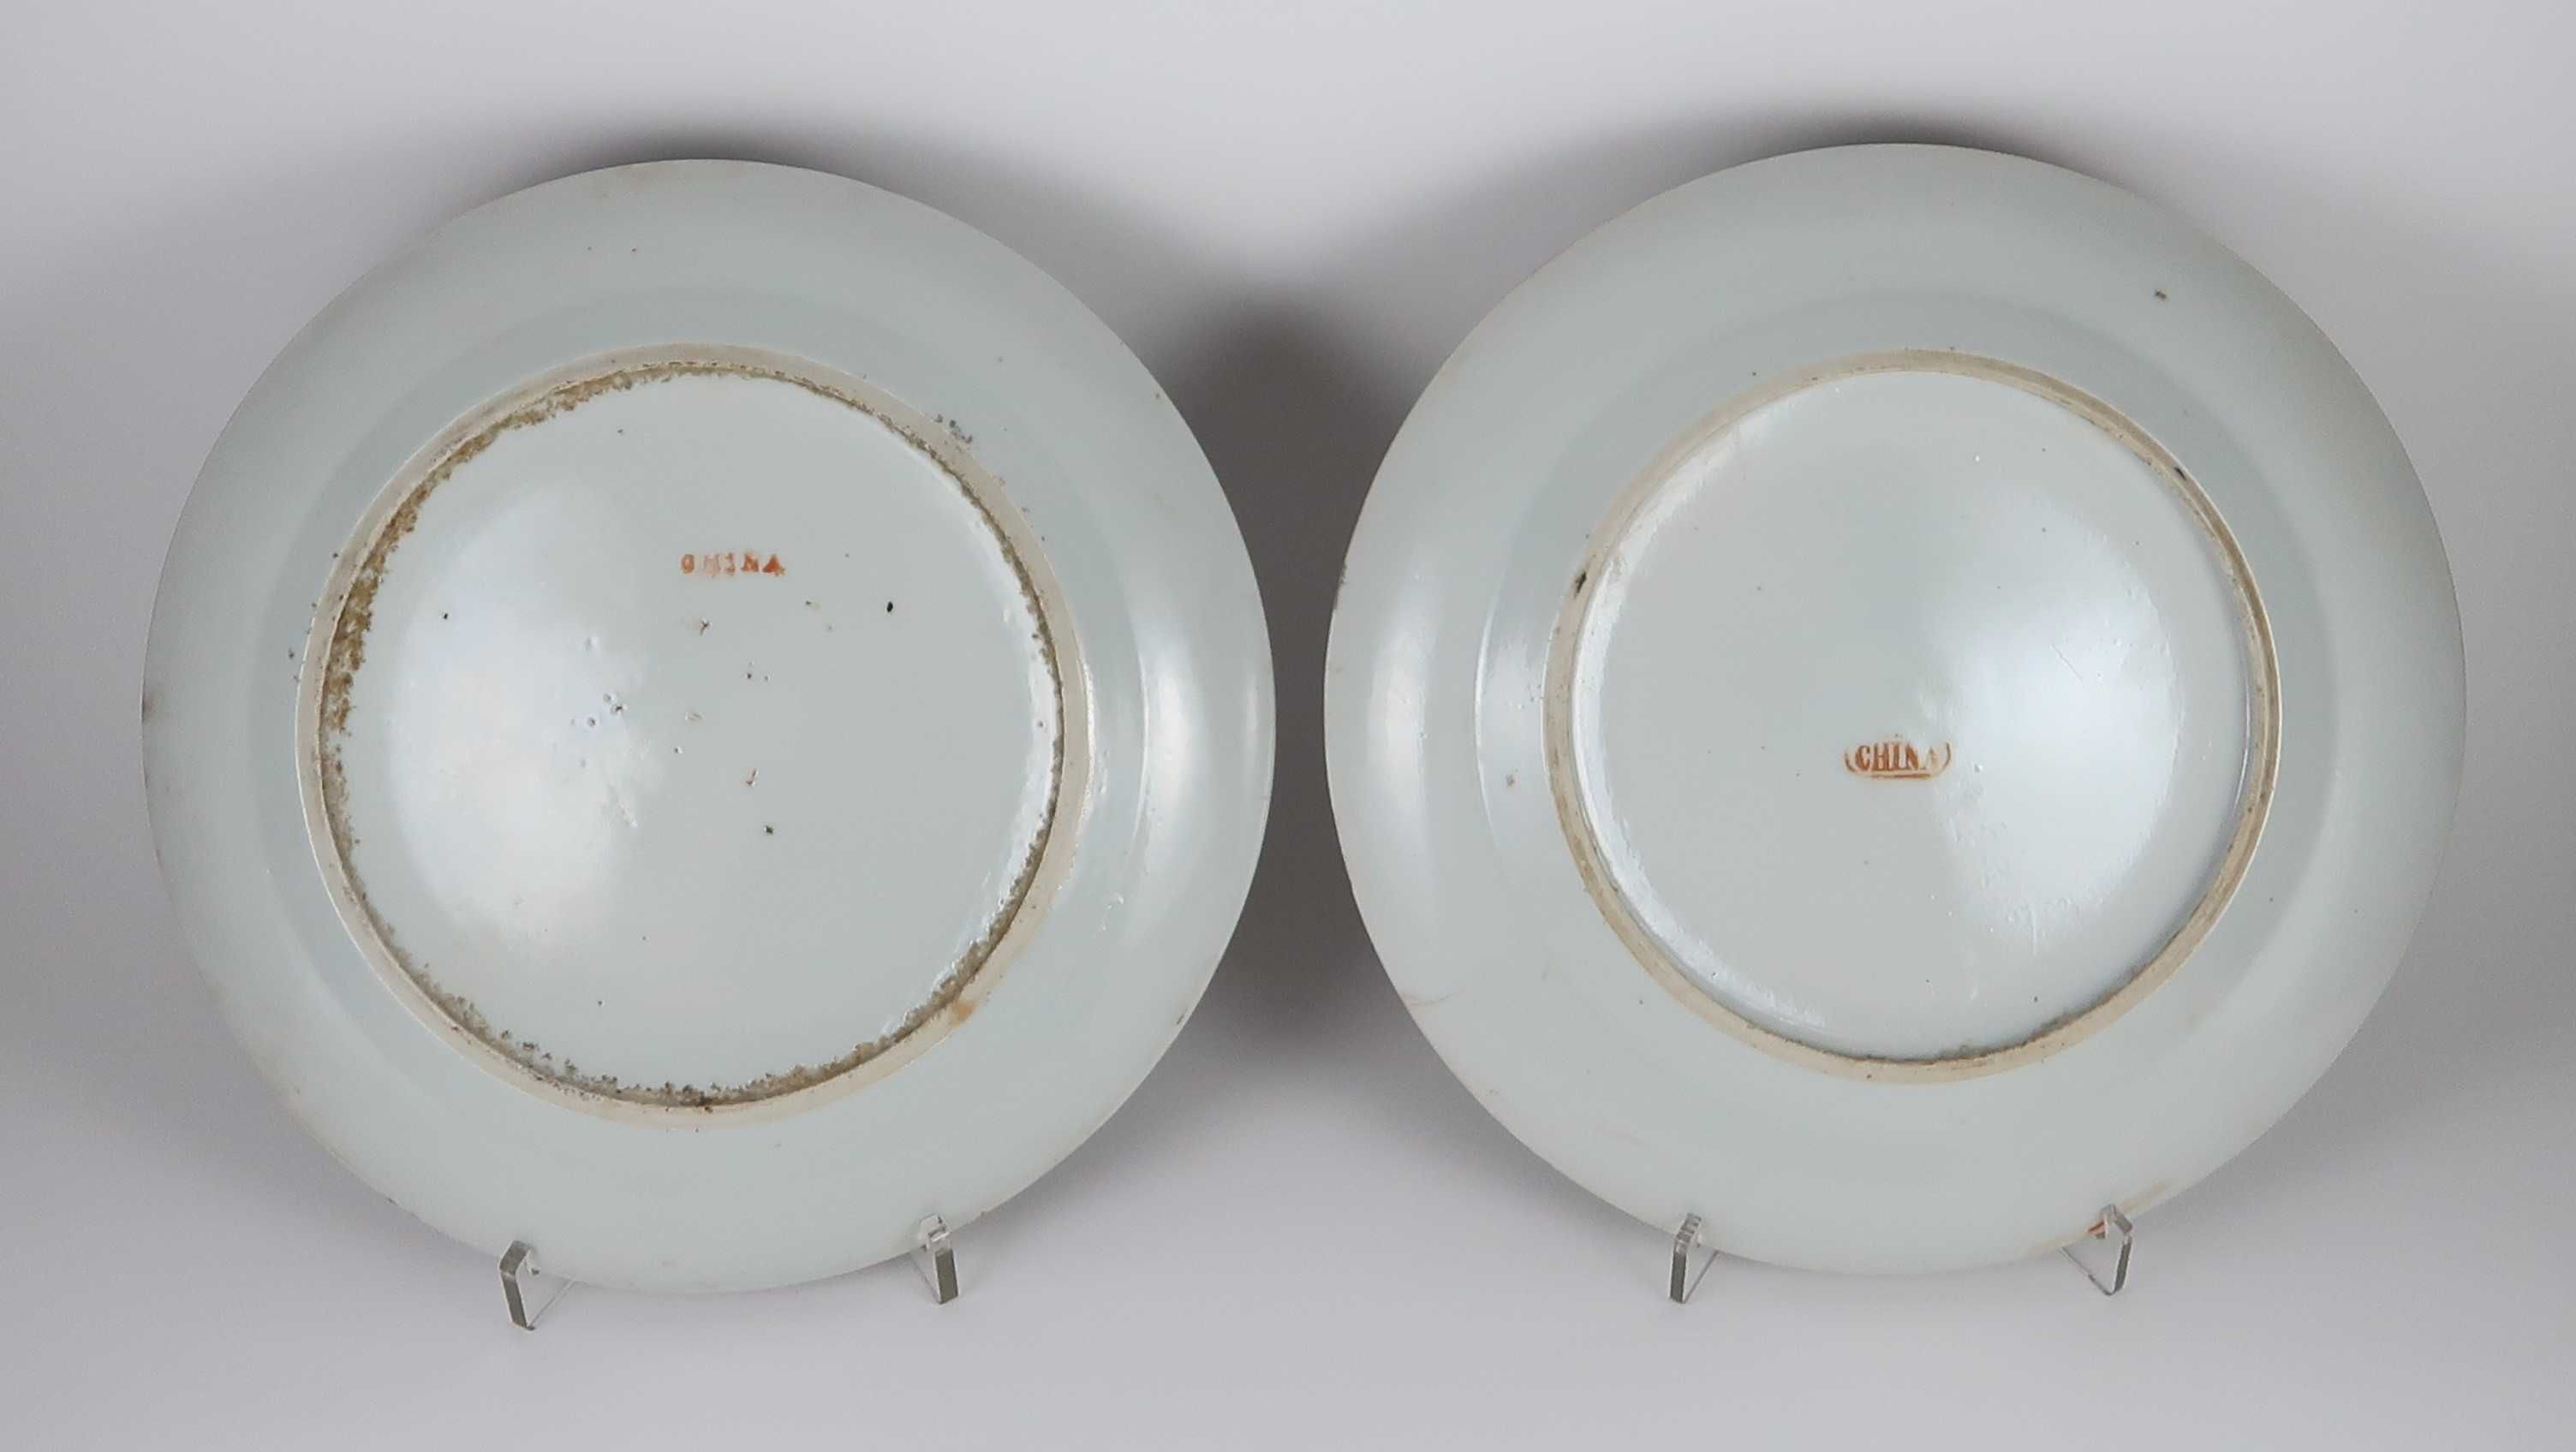 Pratos em Porcelana da China Séc. XIX - 24 cm, CADA